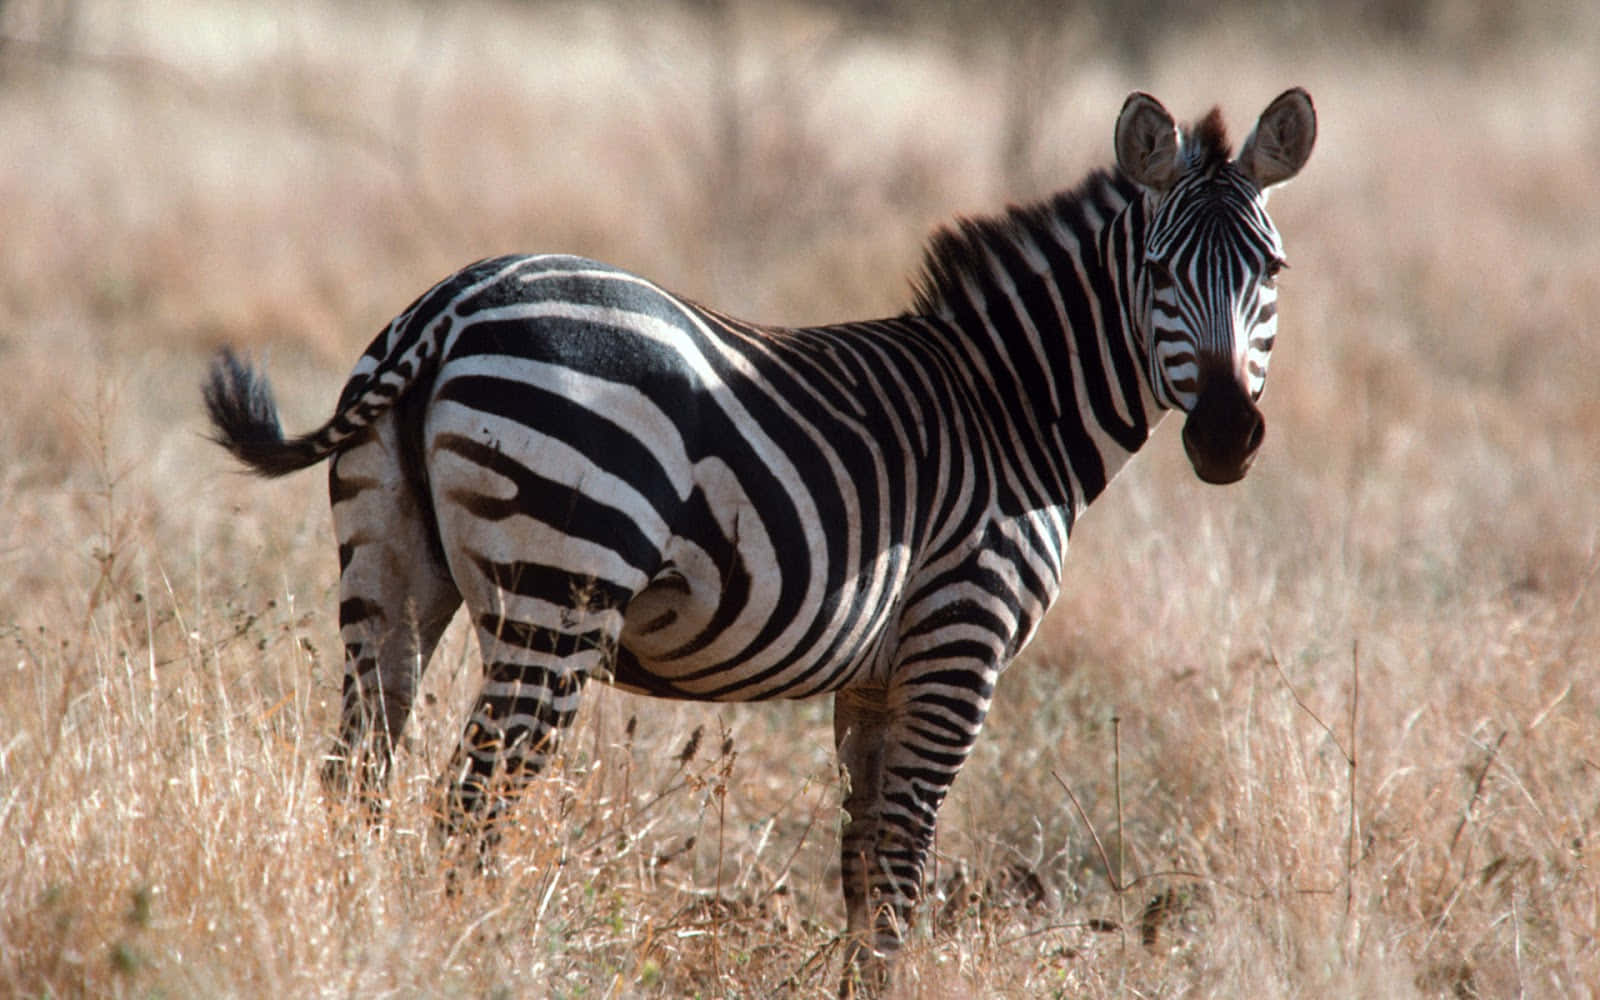 A Closeup of a Grassy Plains Zebra